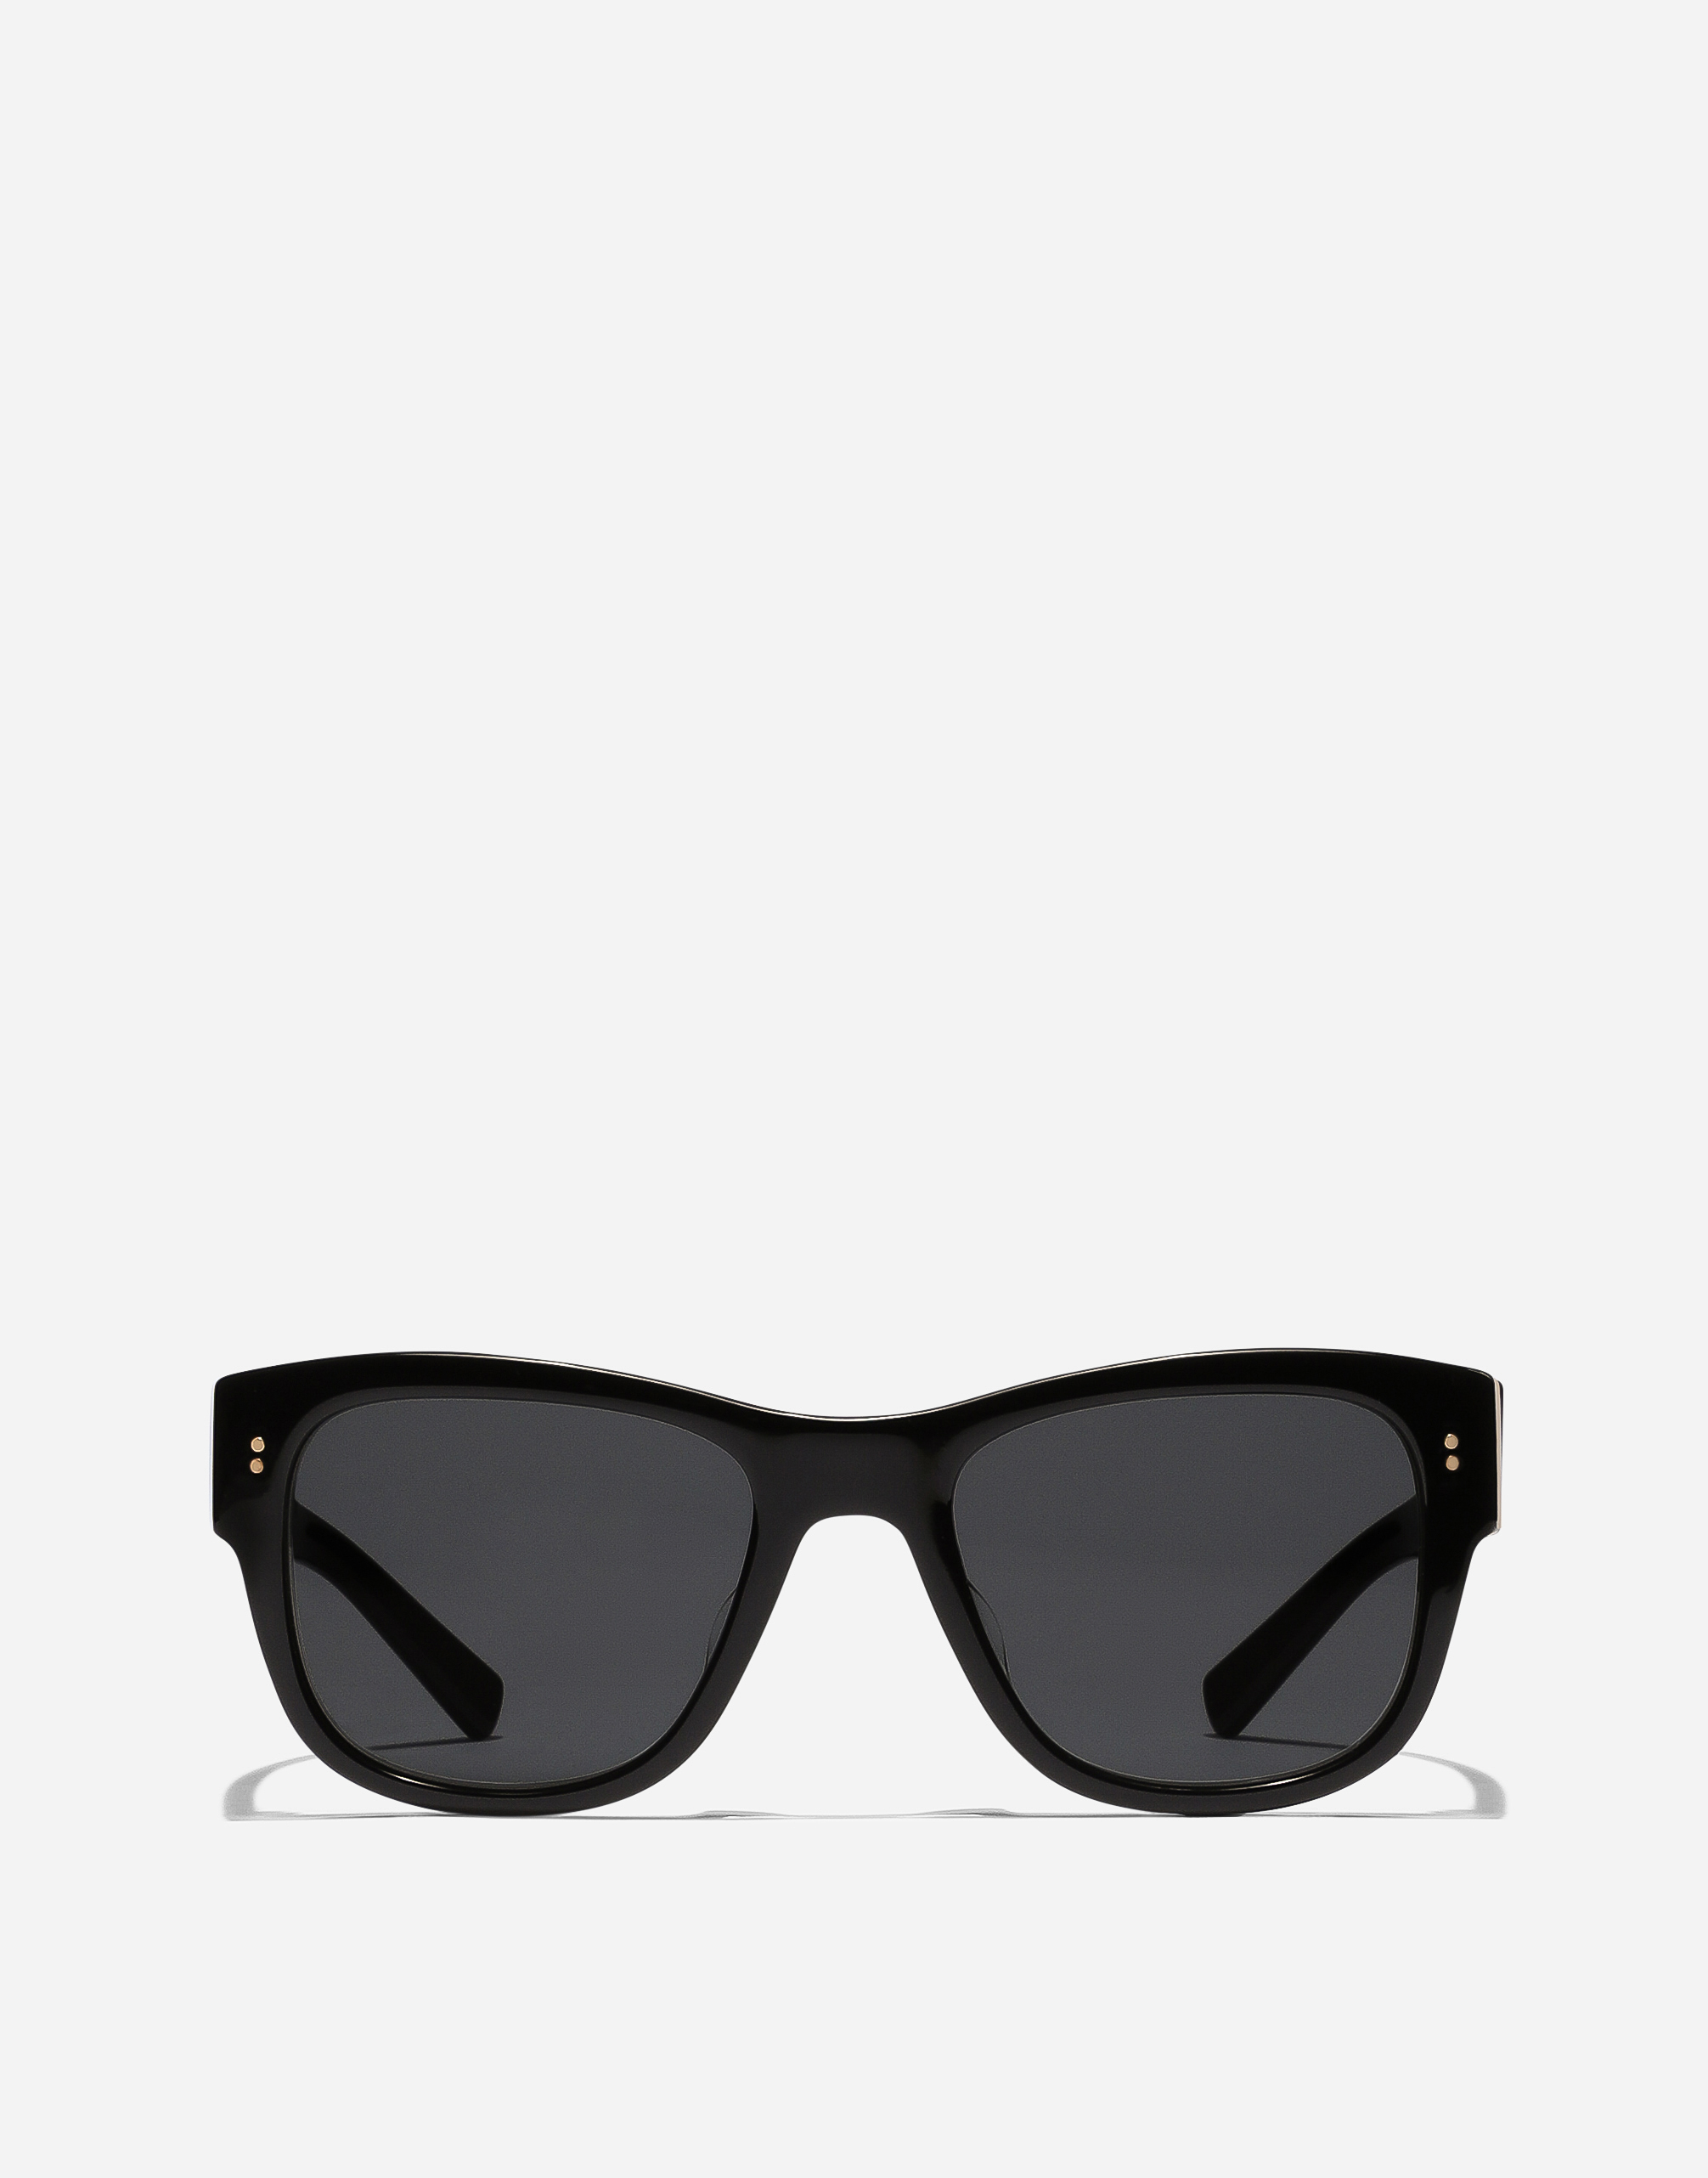 Domenico sunglasses in Black